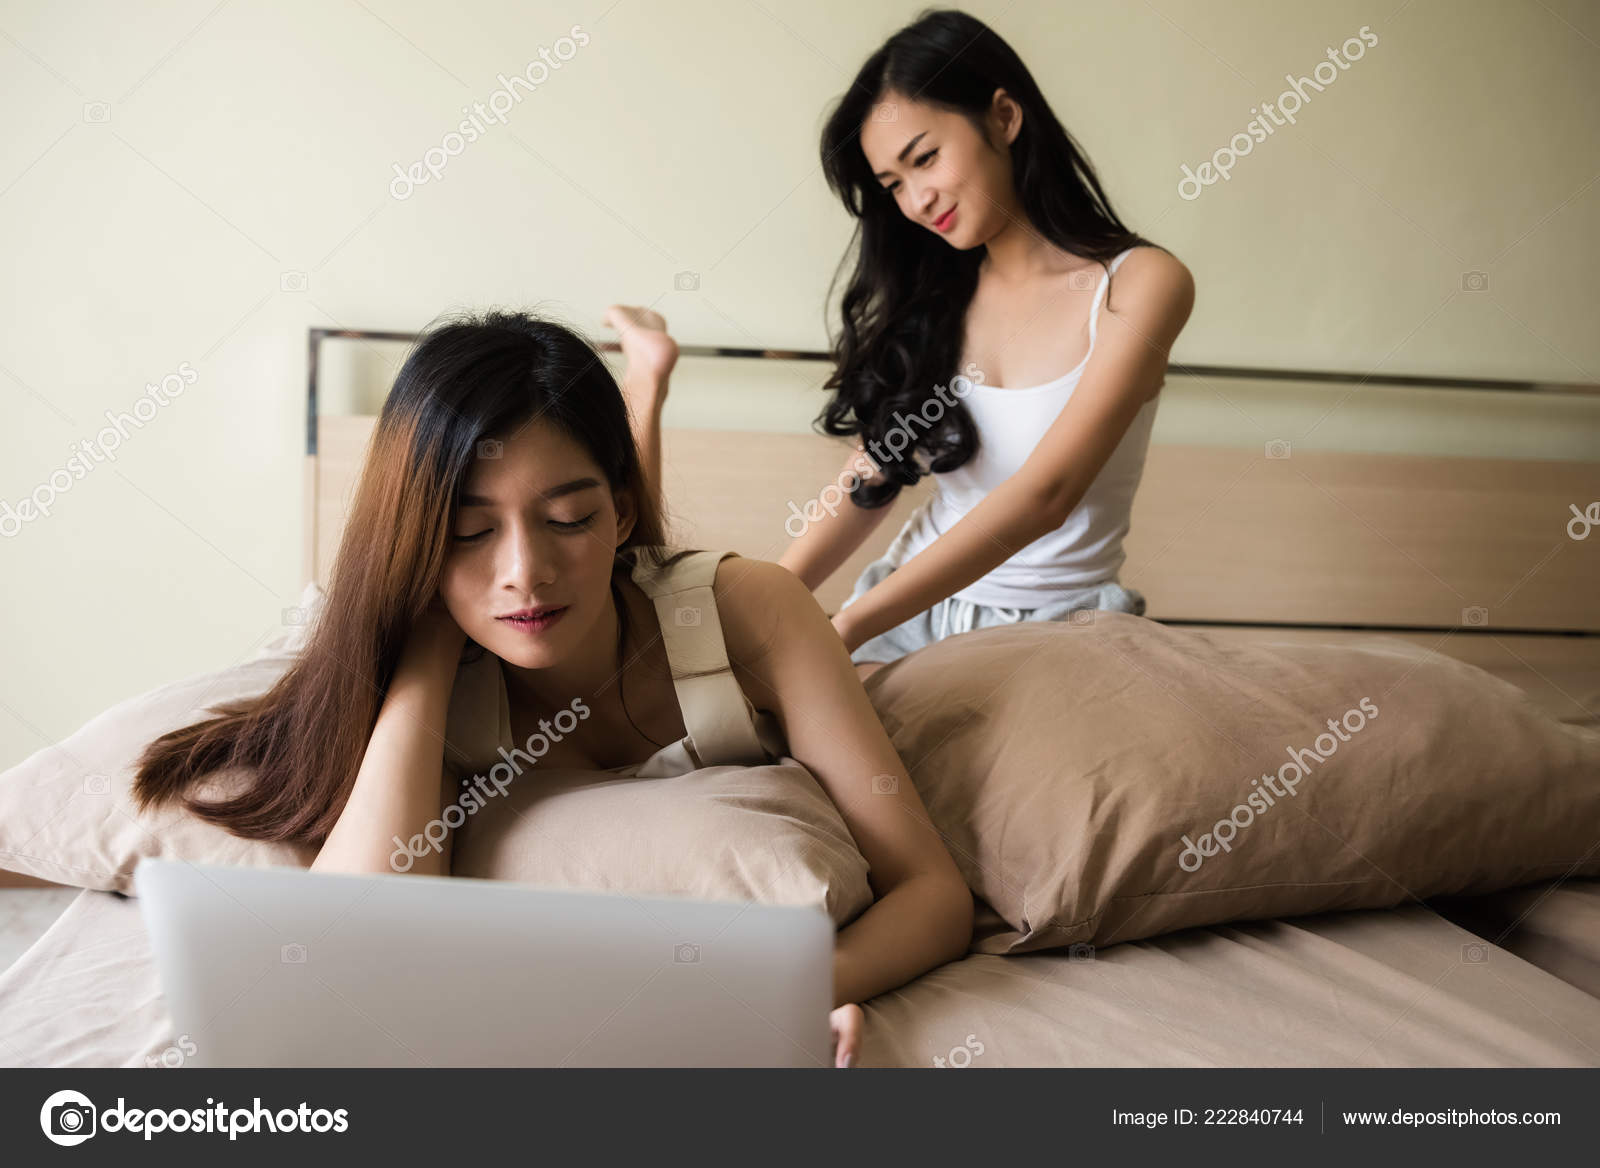 Lesbian Massage - Black Girl Lesbian Massage - Best Sex Photos, Hot Porn ...